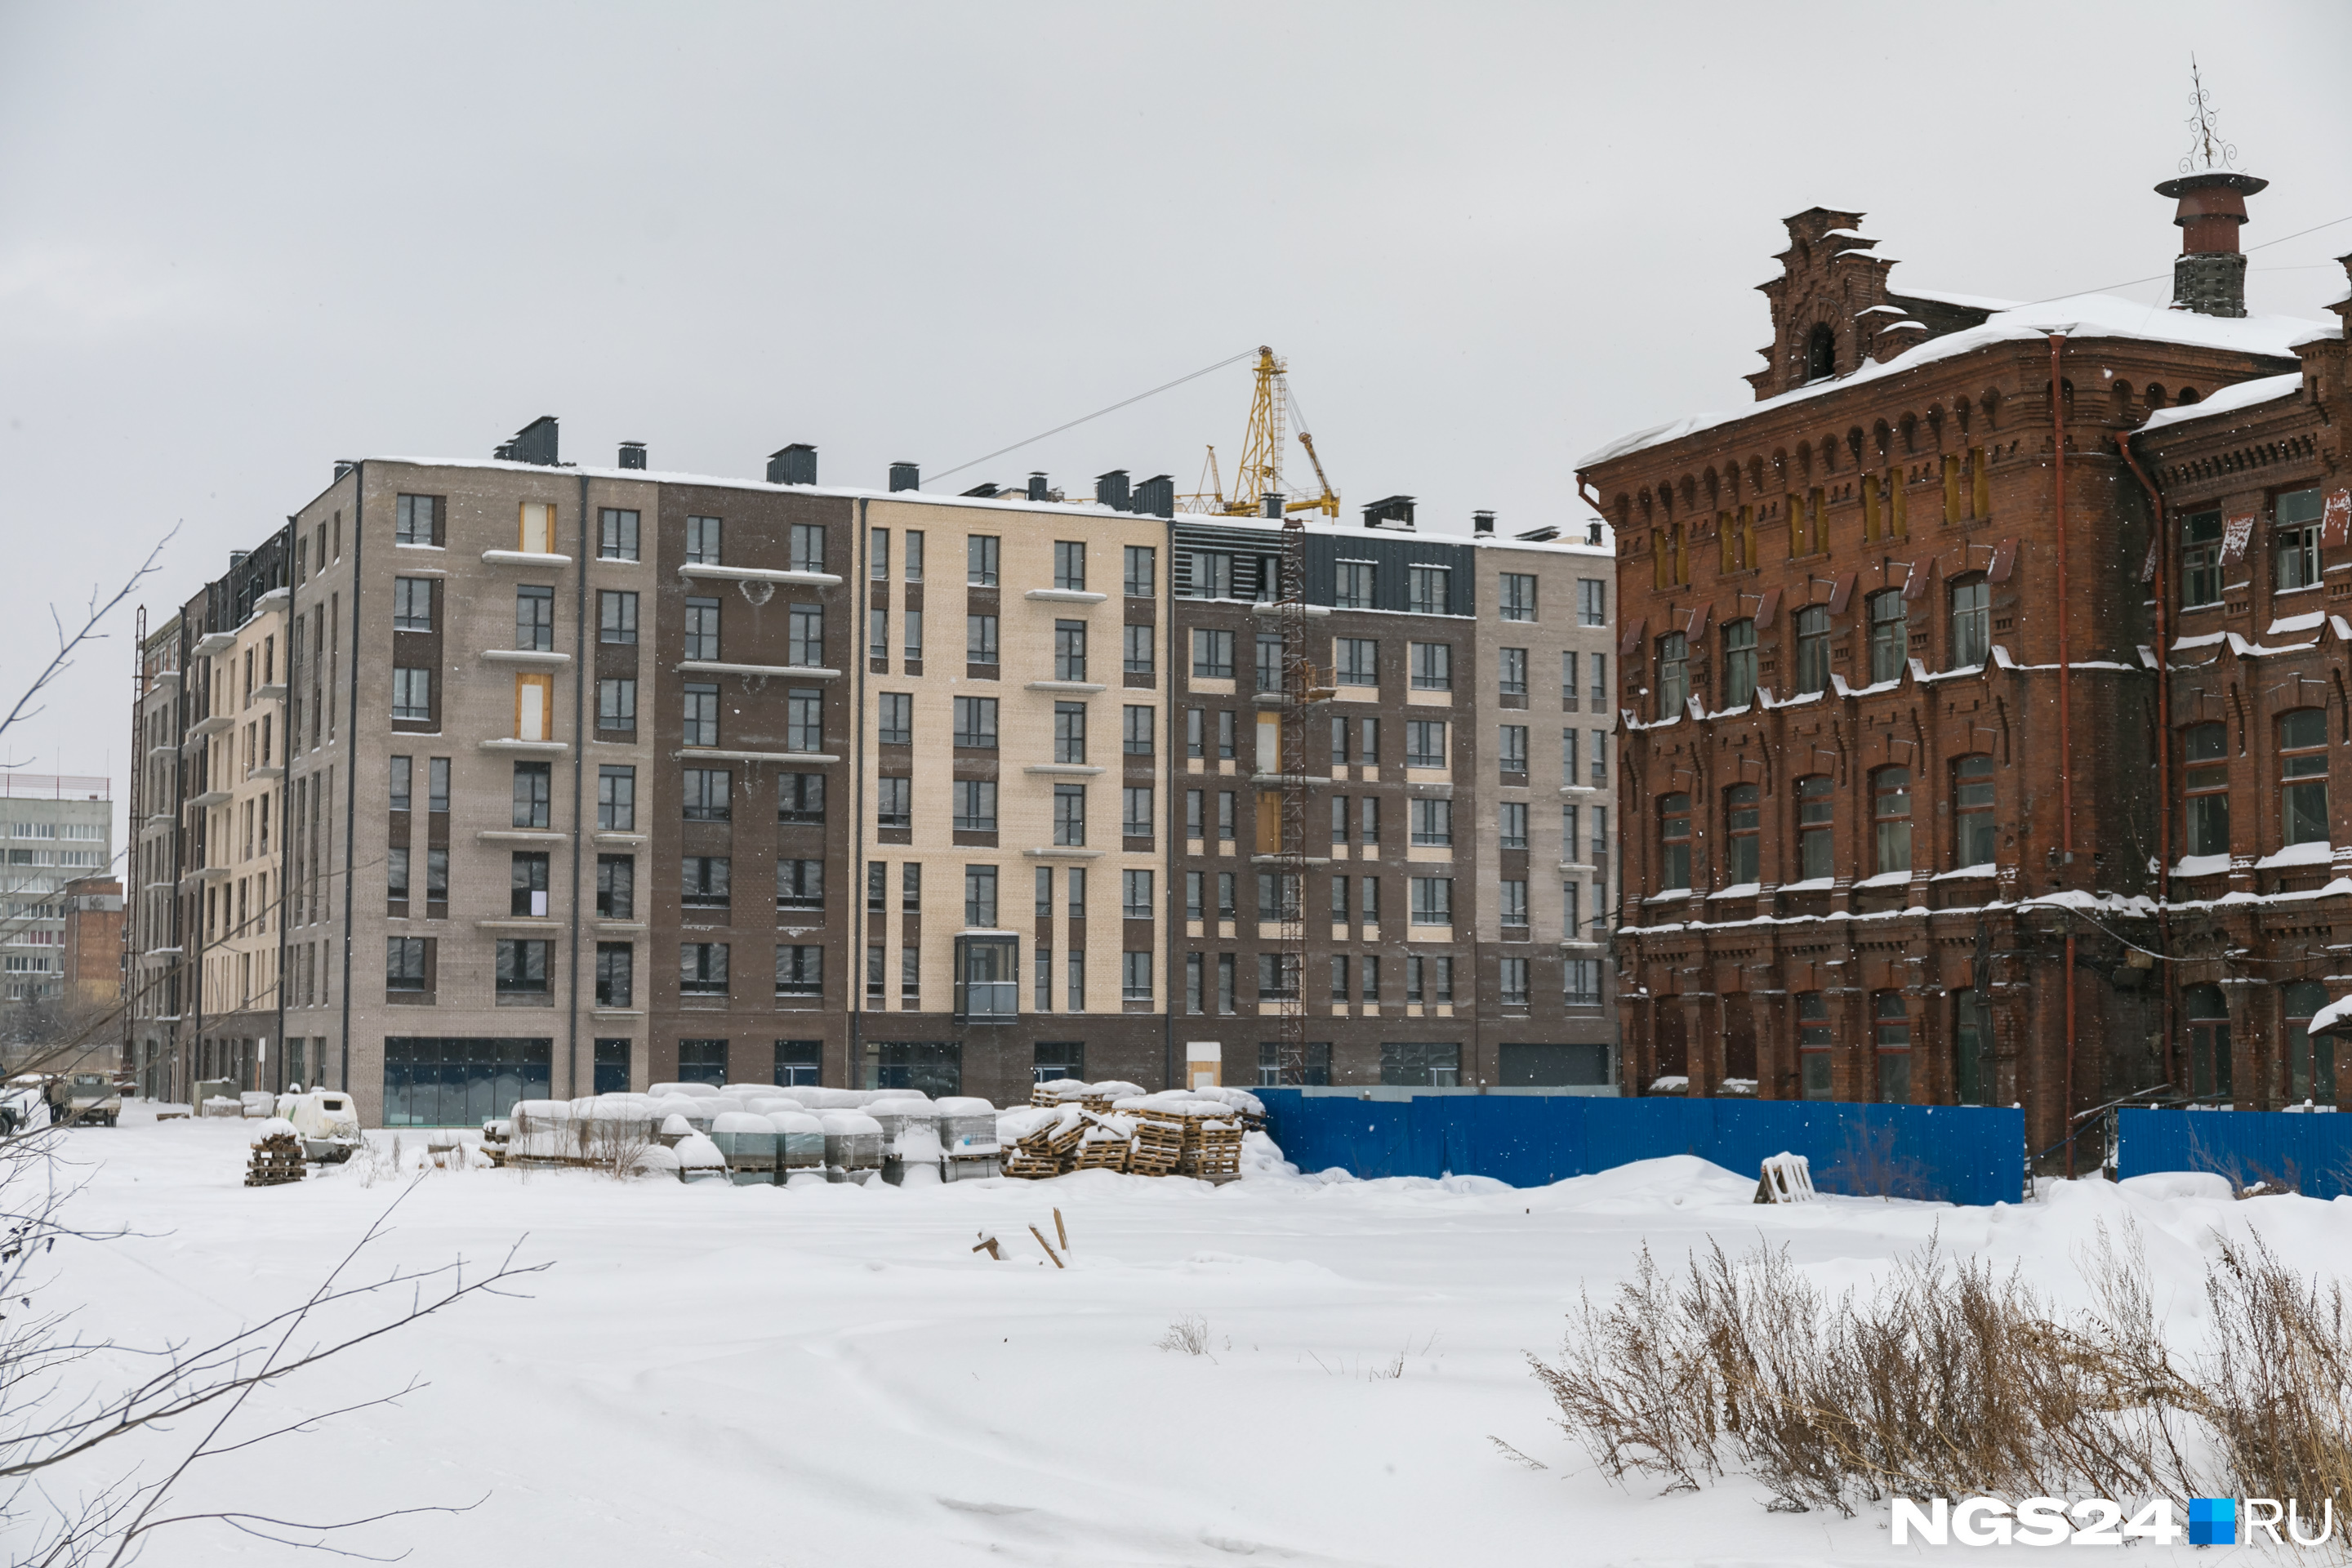 Винную монополию окружили новые жилые кварталы. На фото микрорайон «Новоостровский» компании «Сибиряк». Стоимость однокомнатной квартиры здесь — от 5,3 миллиона рублей. 2-,3-комнатные квартиры стоят от 7 миллионов. Сдача первых домов — конец этого года